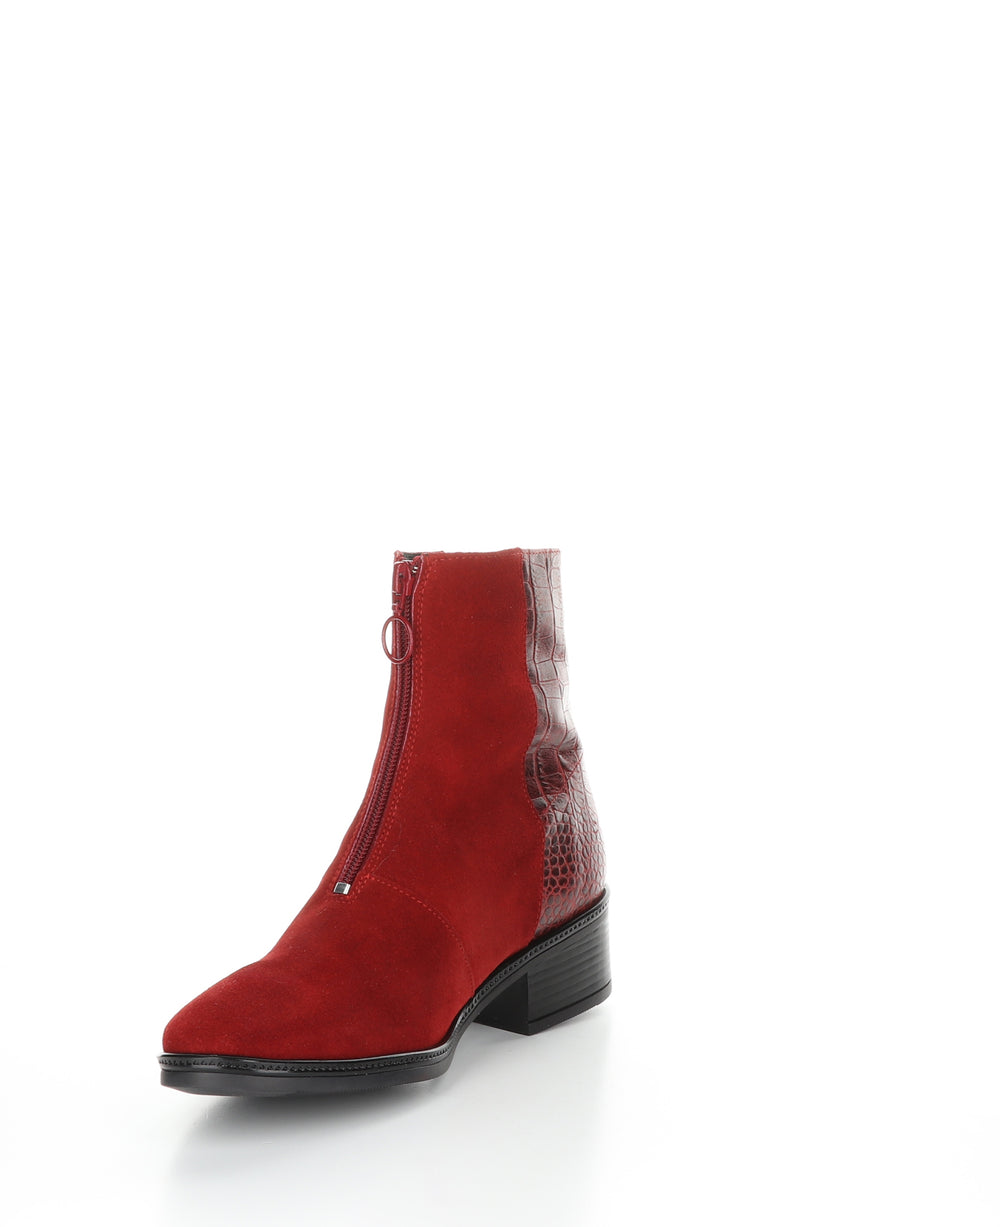 JORDON Red Zip Up Ankle Boots|JORDON Bottines avec Fermeture Zippée in Rouge